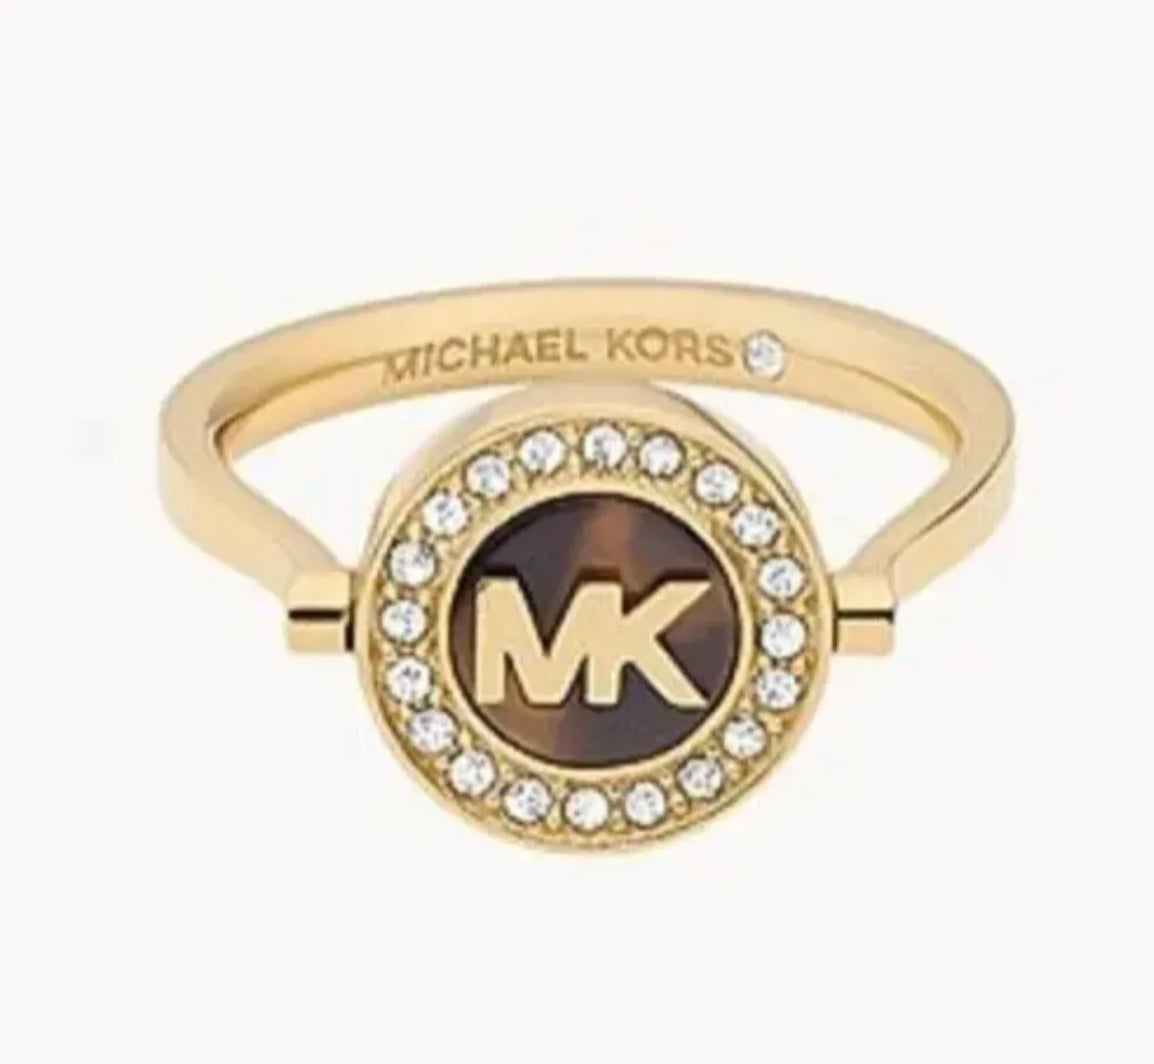 Michael kors rings